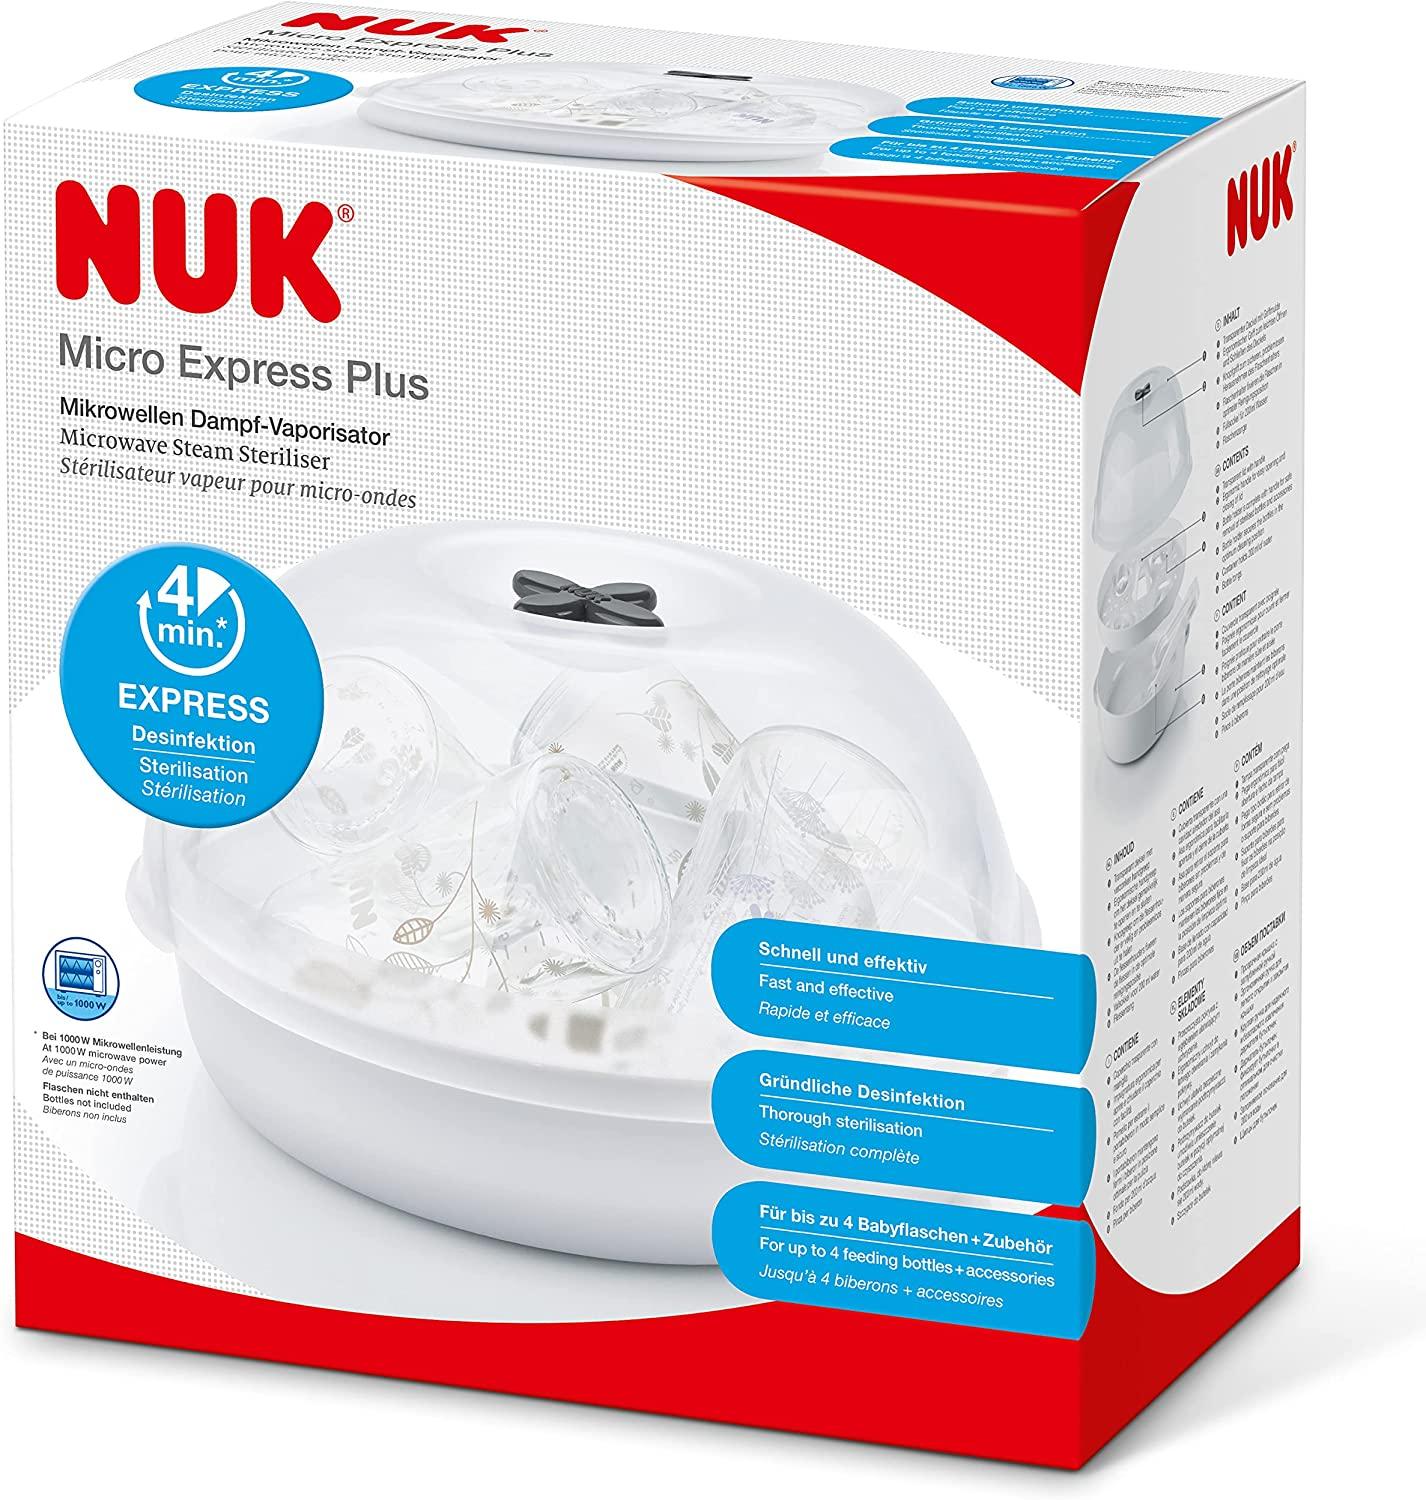 NUK Micro Express Plus Esterilizador de mamadeiras a vapor para micro-ondas